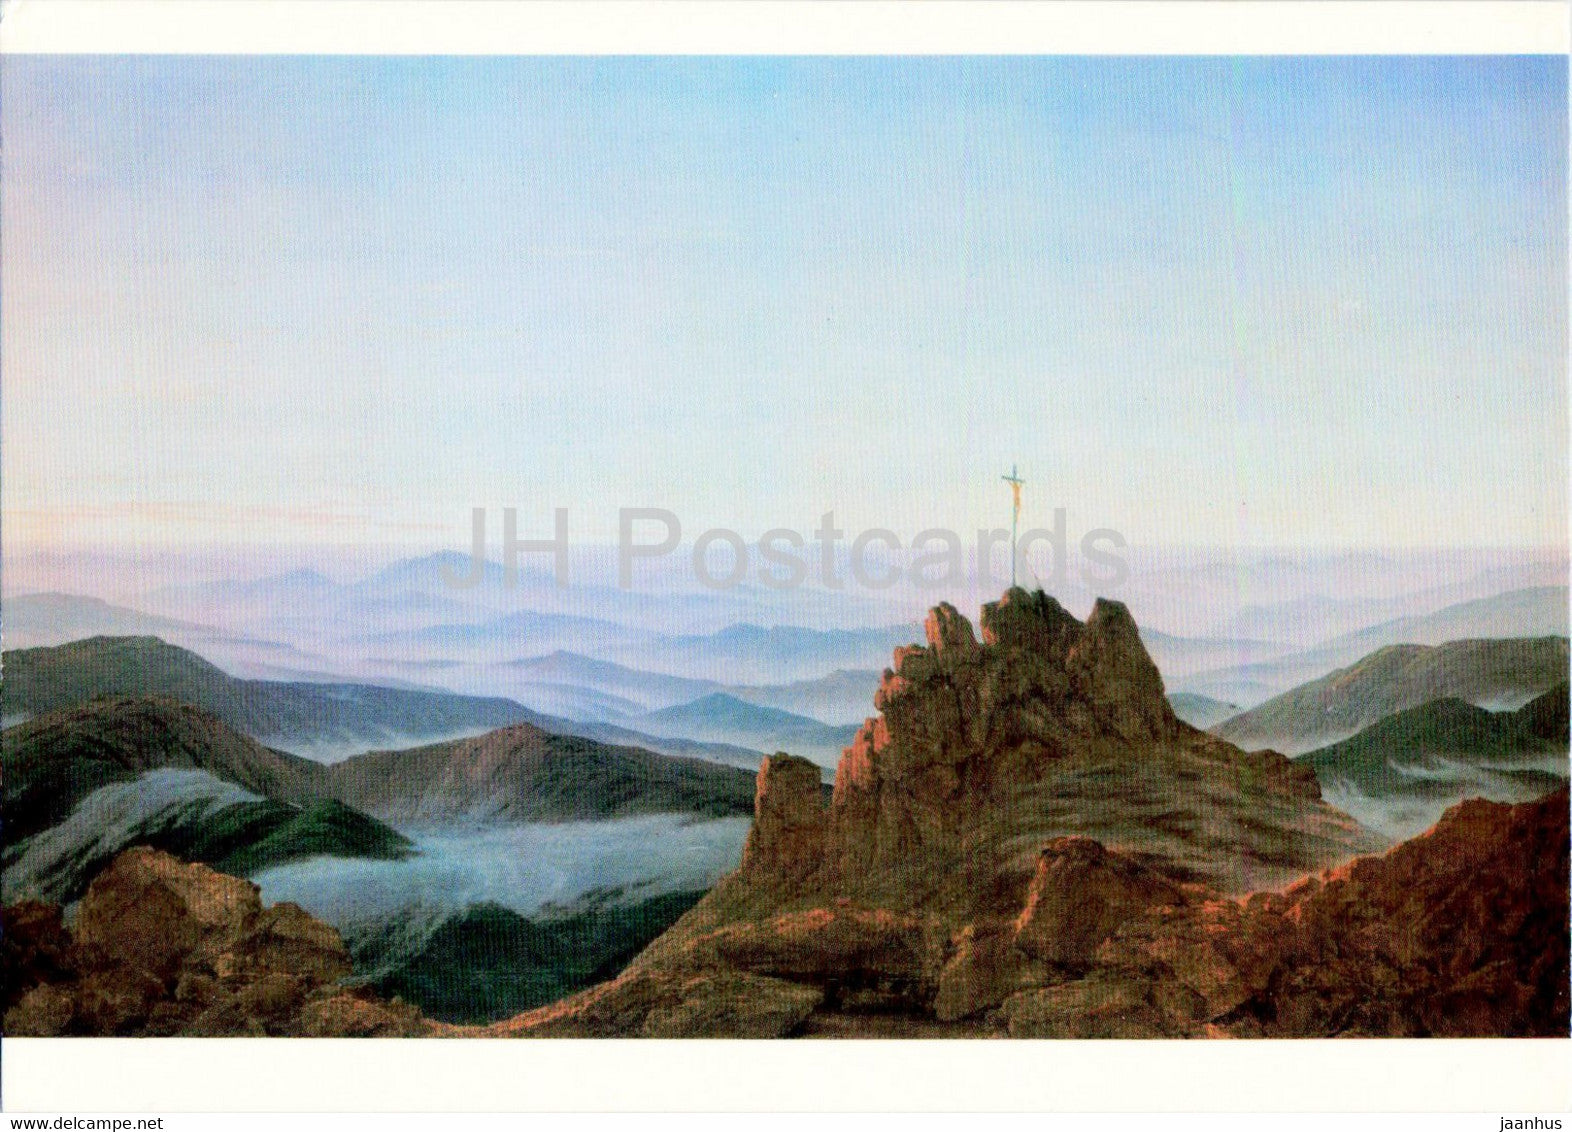 painting by Caspar David Friedrich - Das Kreuz im Riesengebirge - German art - Switzerland - unused - JH Postcards